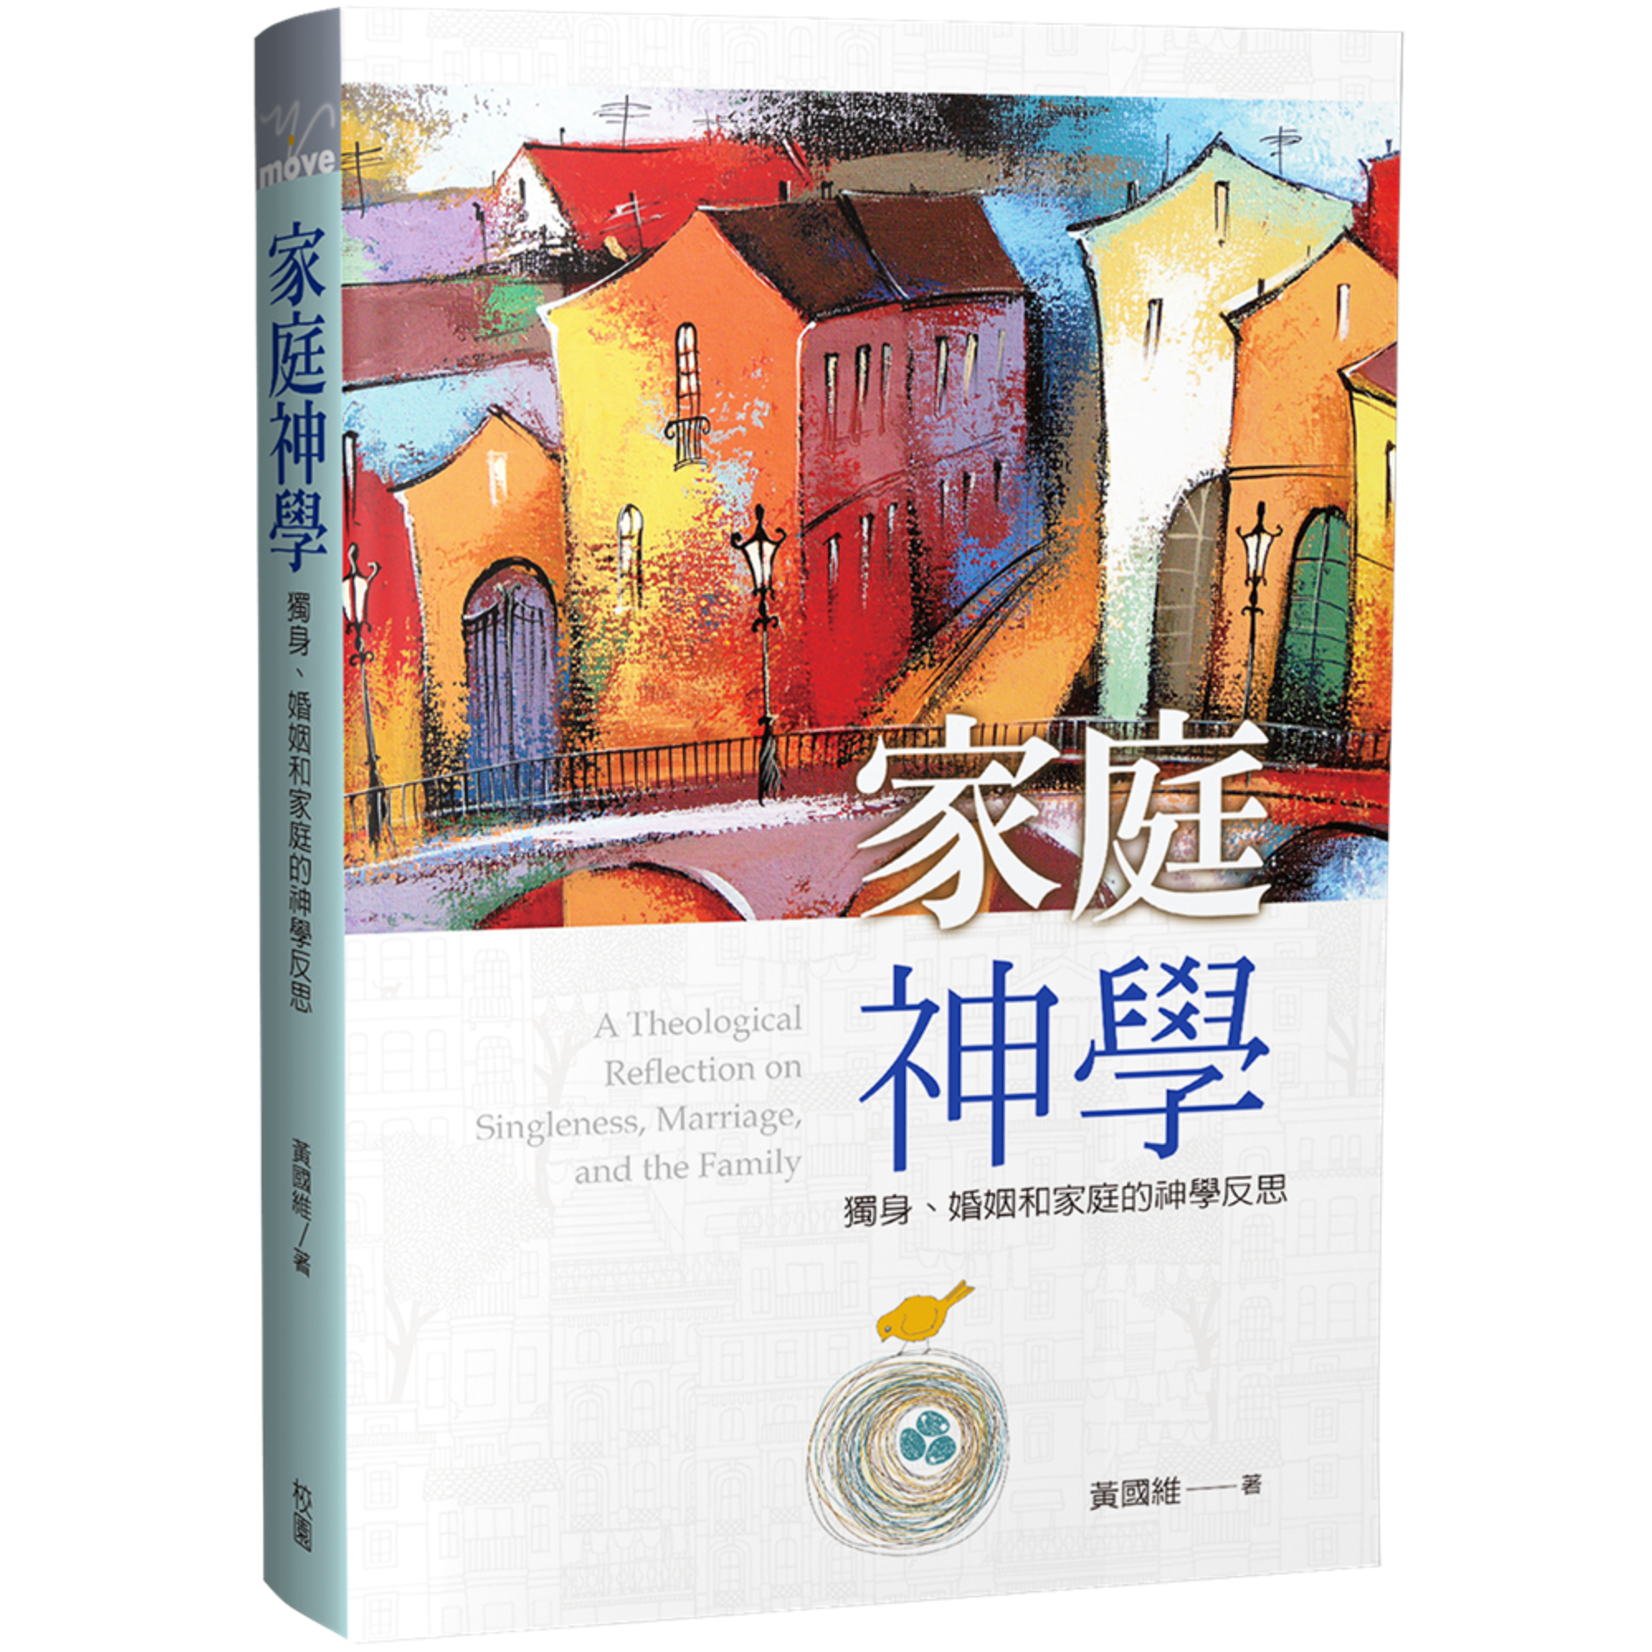 台灣校園書房 Campus Books 家庭神學：獨身、婚姻和家庭的神學反思